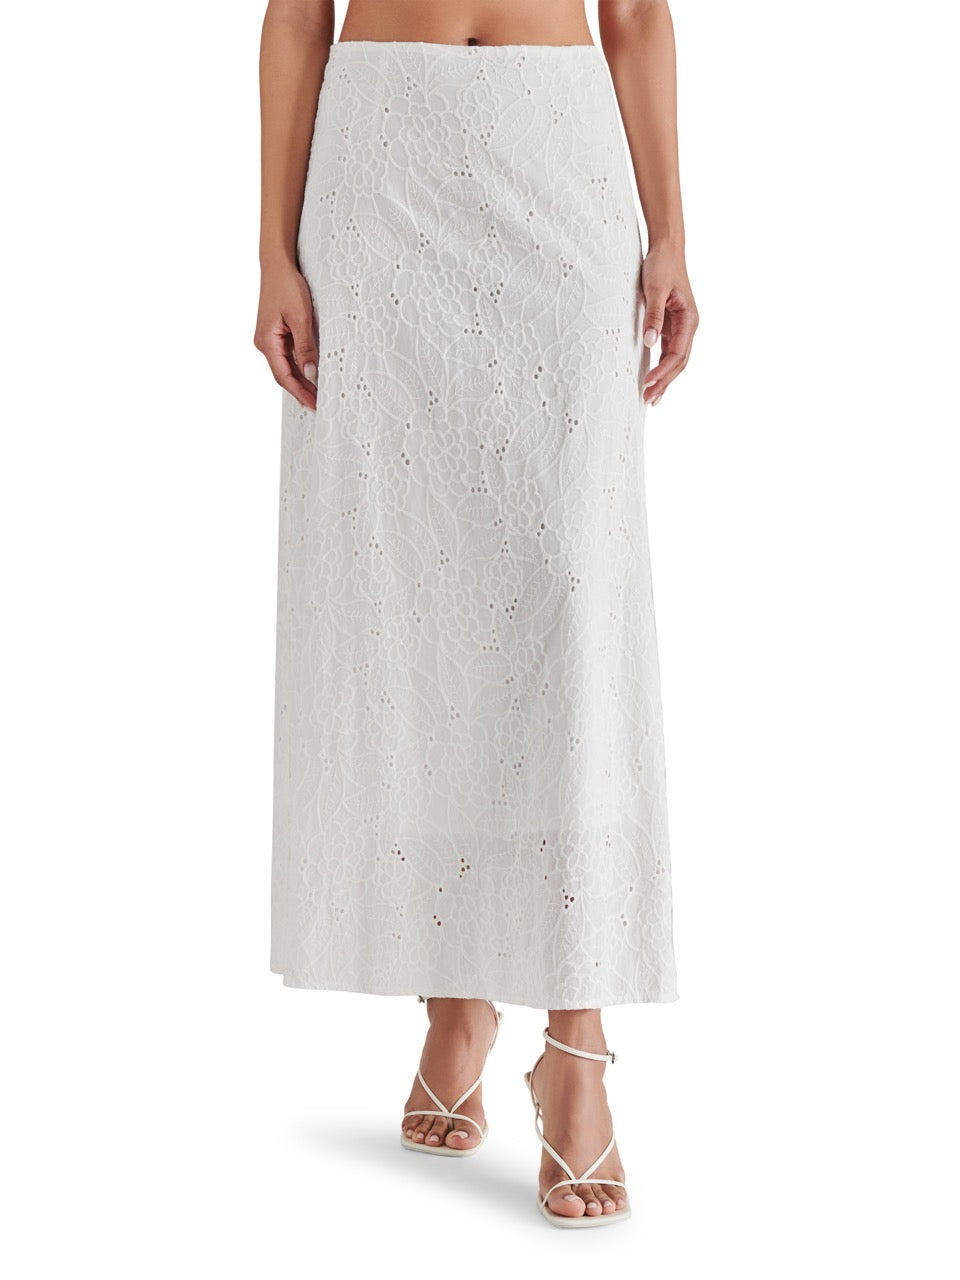 steve madden amalia skirt in white-front view